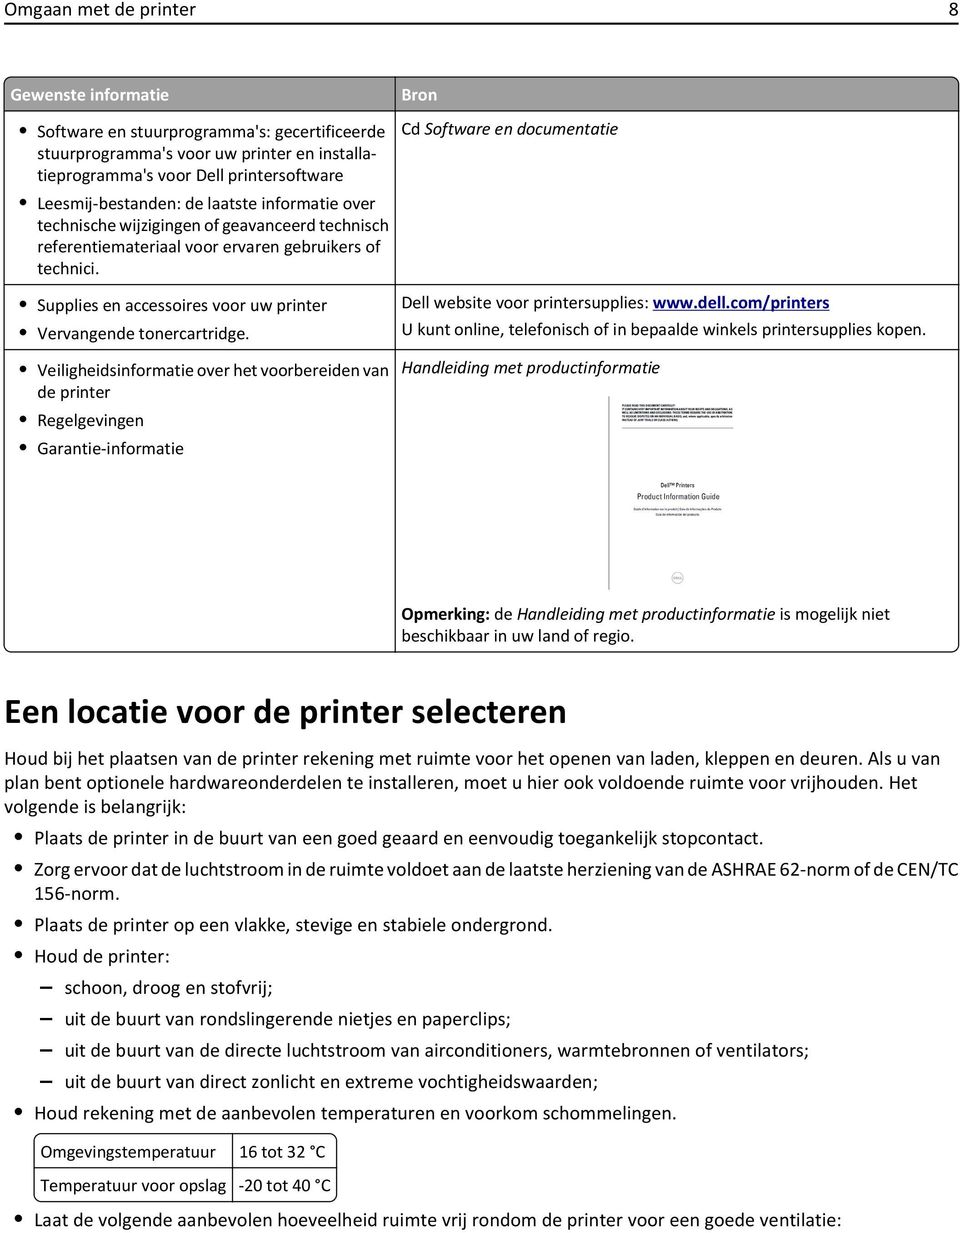 Veiligheidsinformatie over het voorbereiden van de printer Regelgevingen Garantie-informatie Bron Cd Software en documentatie Dell website voor printersupplies: www.dell.